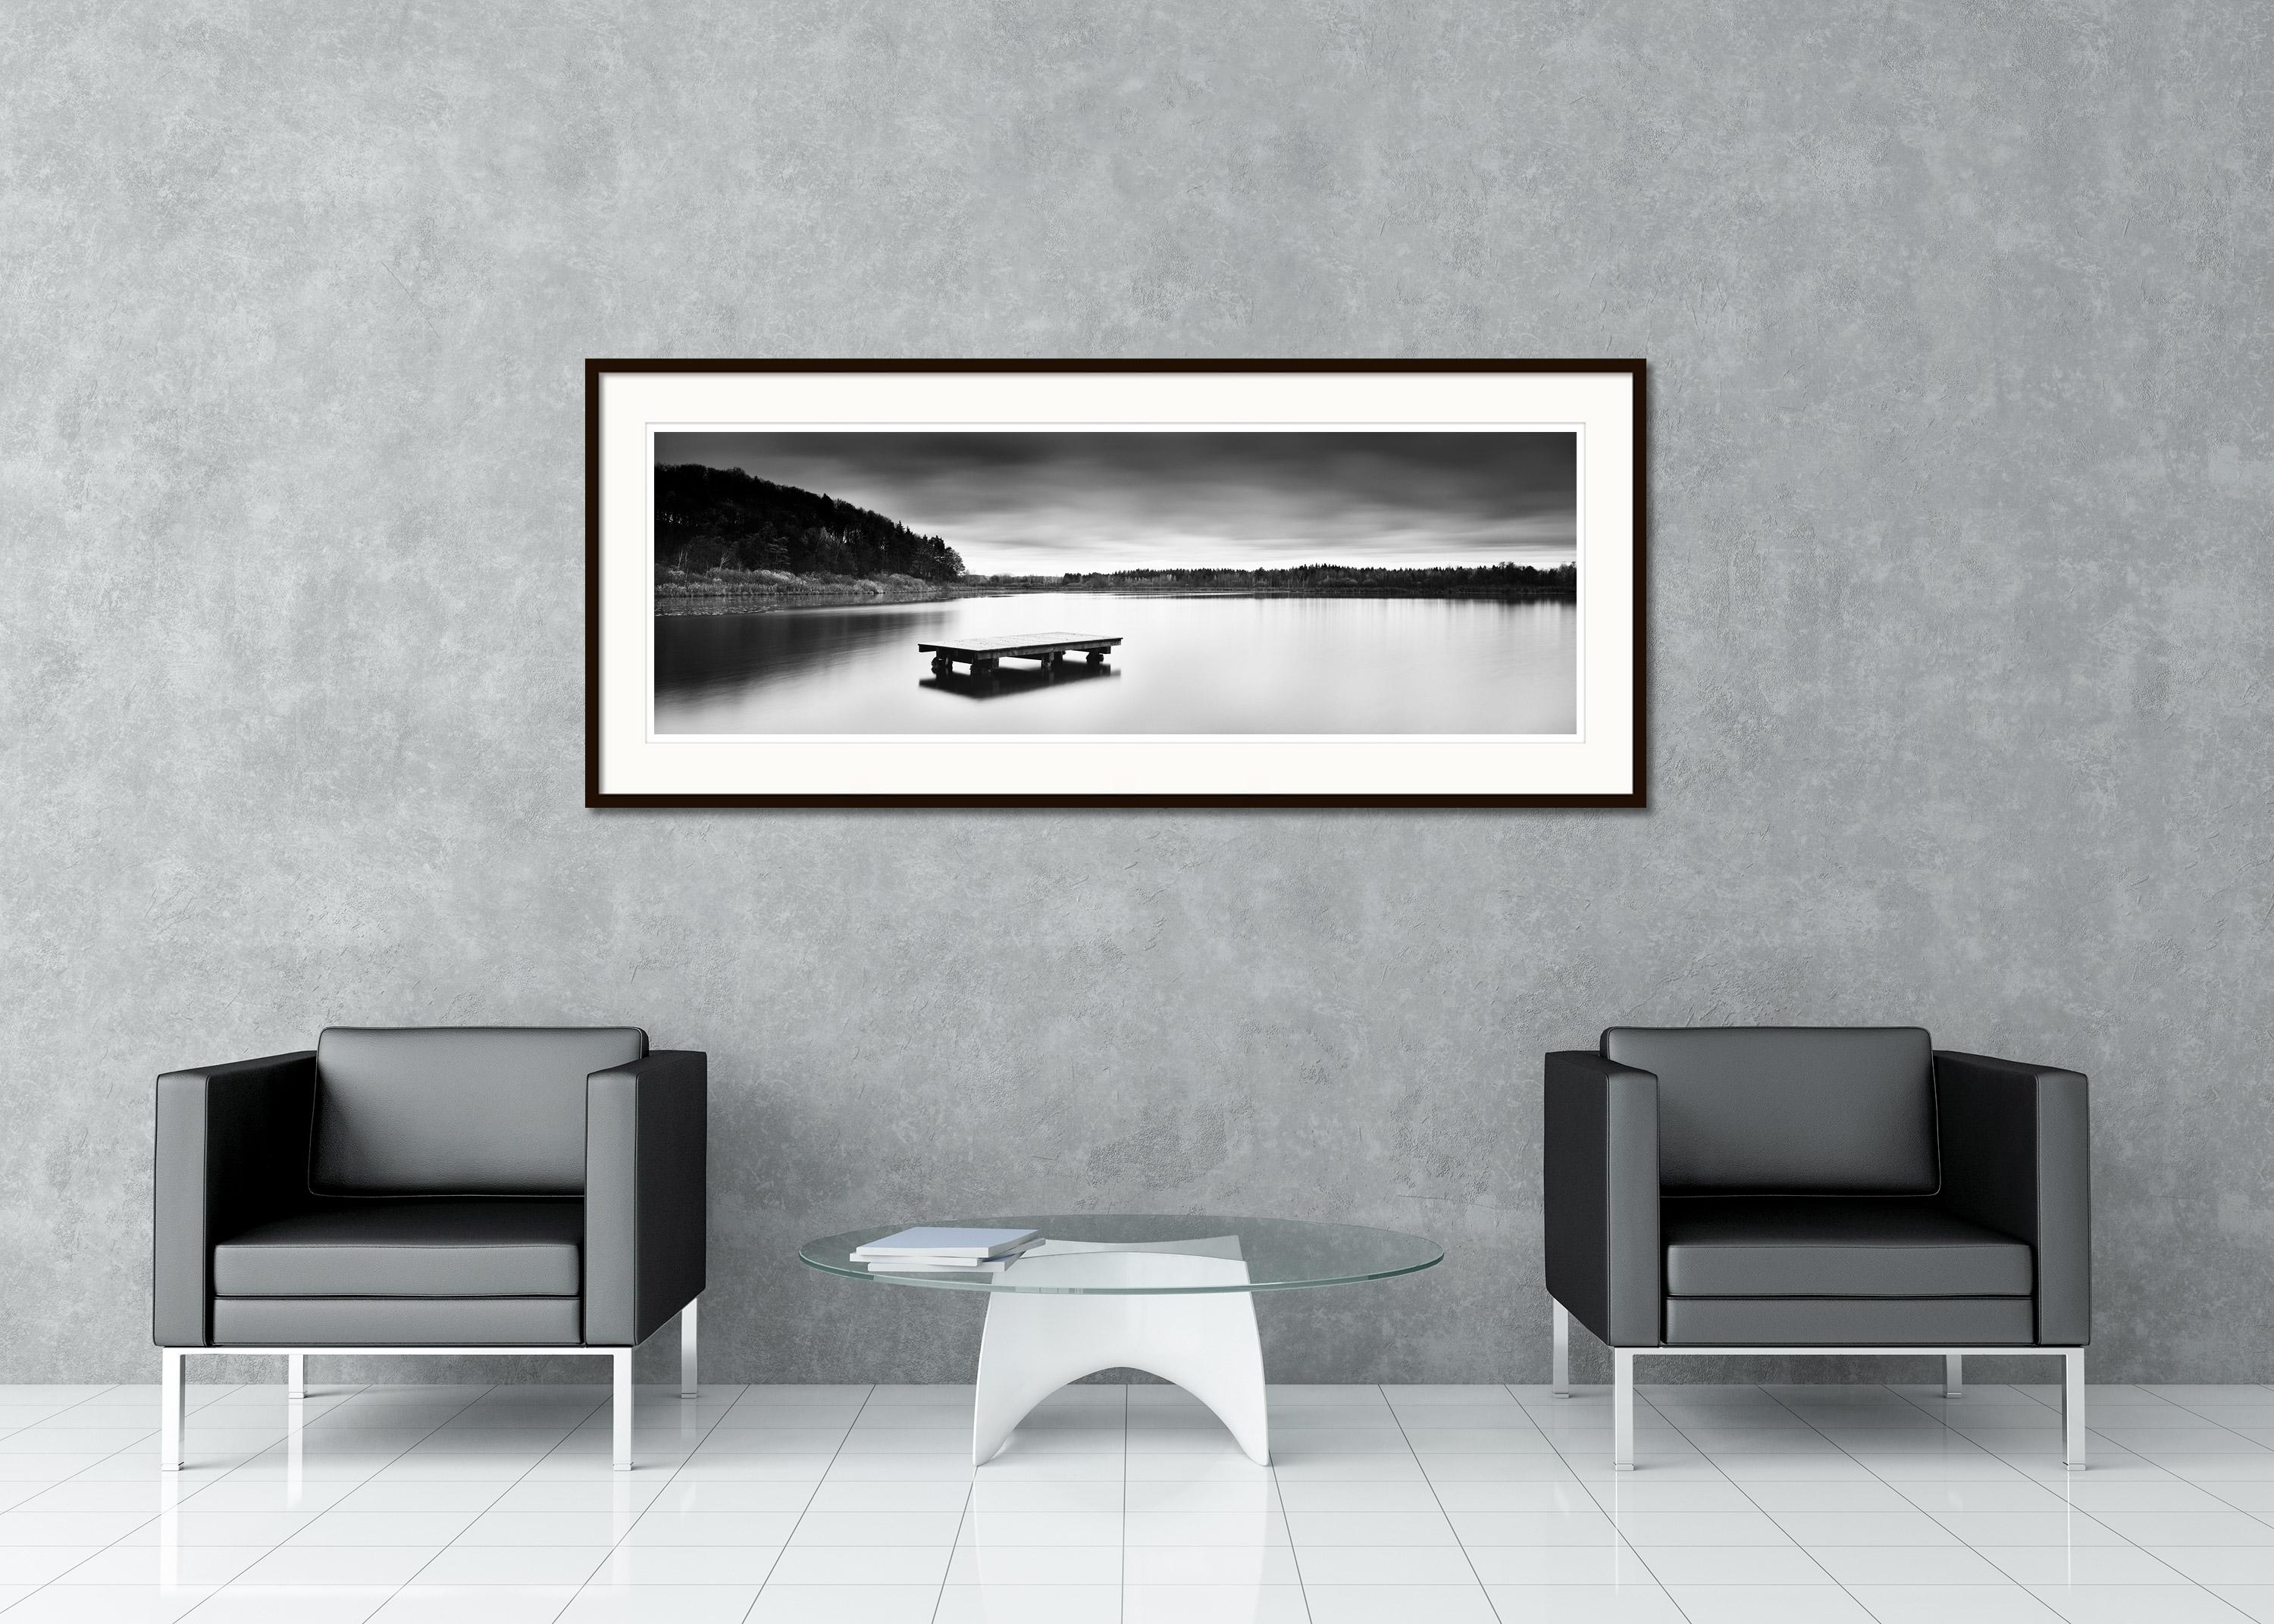 Schwarz-Weiß-Fotografie mit Langzeitbelichtung für Wasserlandschaften - Landschaftsfotografie. Pigmenttintendruck in einer limitierten Auflage von 9 Exemplaren. Alle Drucke von Gerald Berghammer werden auf Bestellung in limitierter Auflage auf